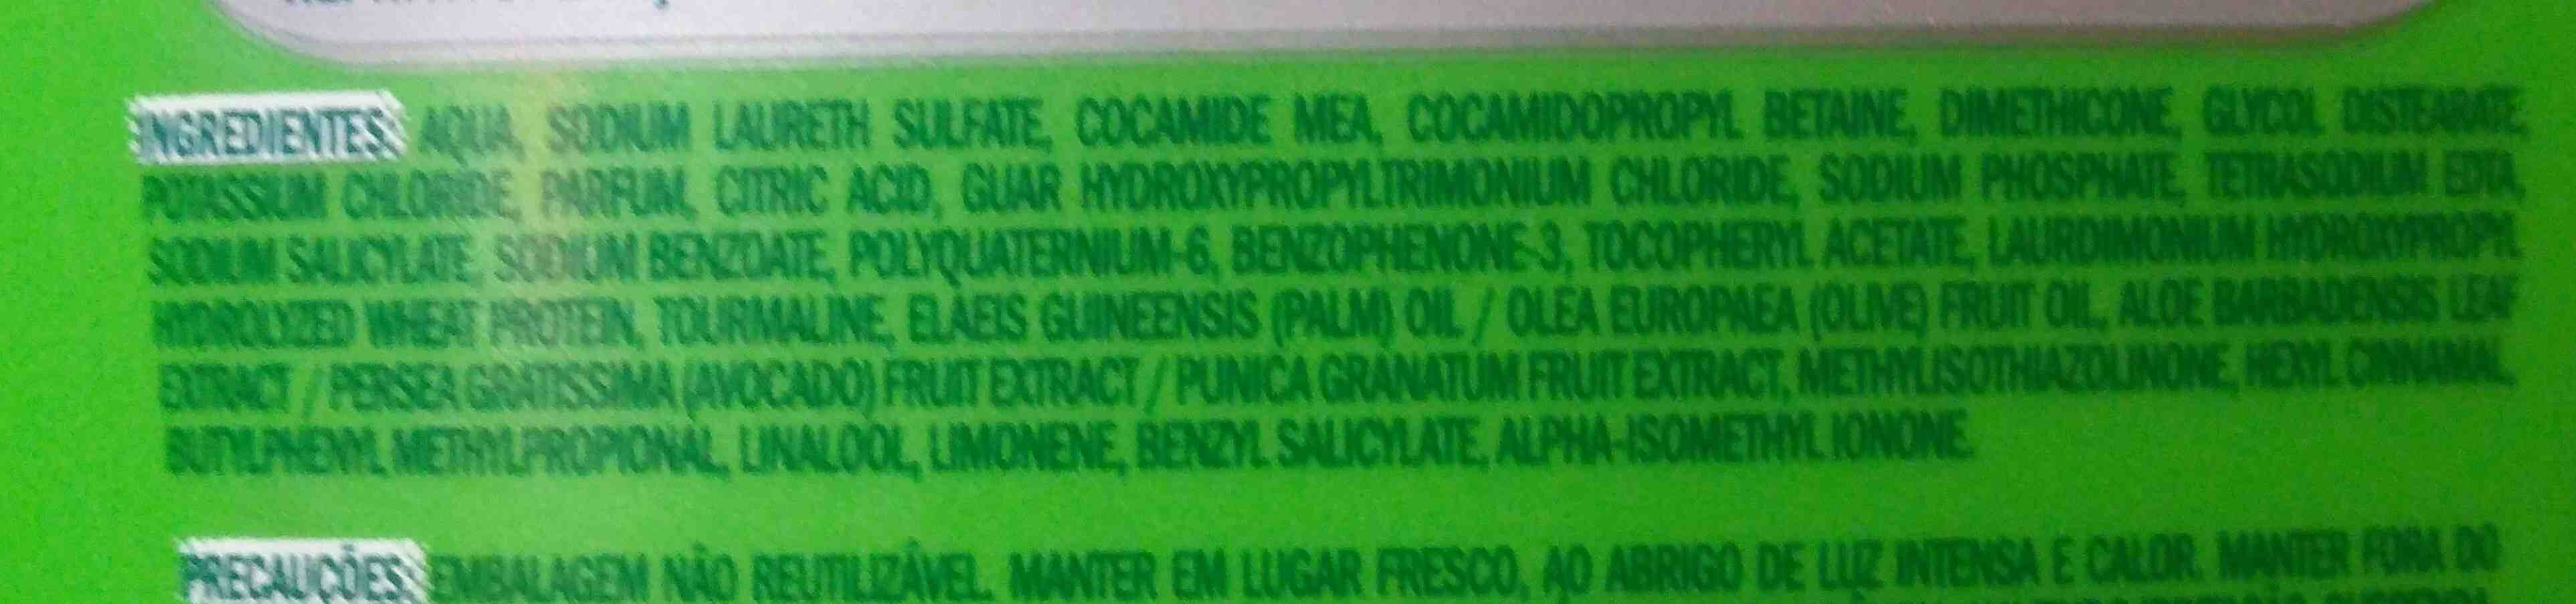 palmolive - Ingredients - en